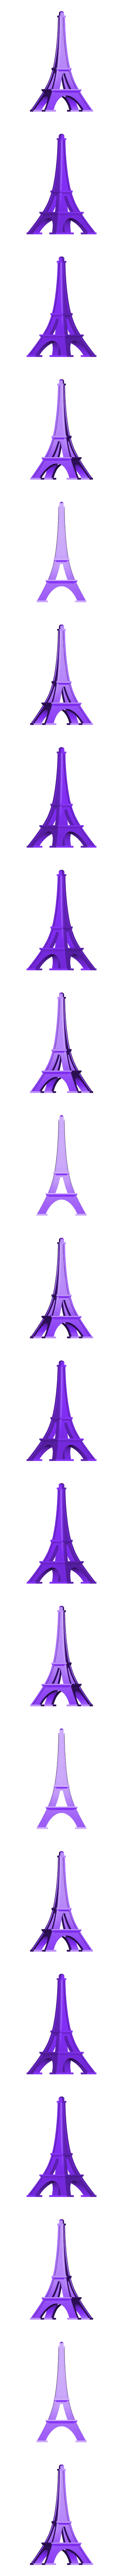 PARIGI.stl Télécharger fichier STL Clés de ville • Plan pour impression 3D, DCD-Design